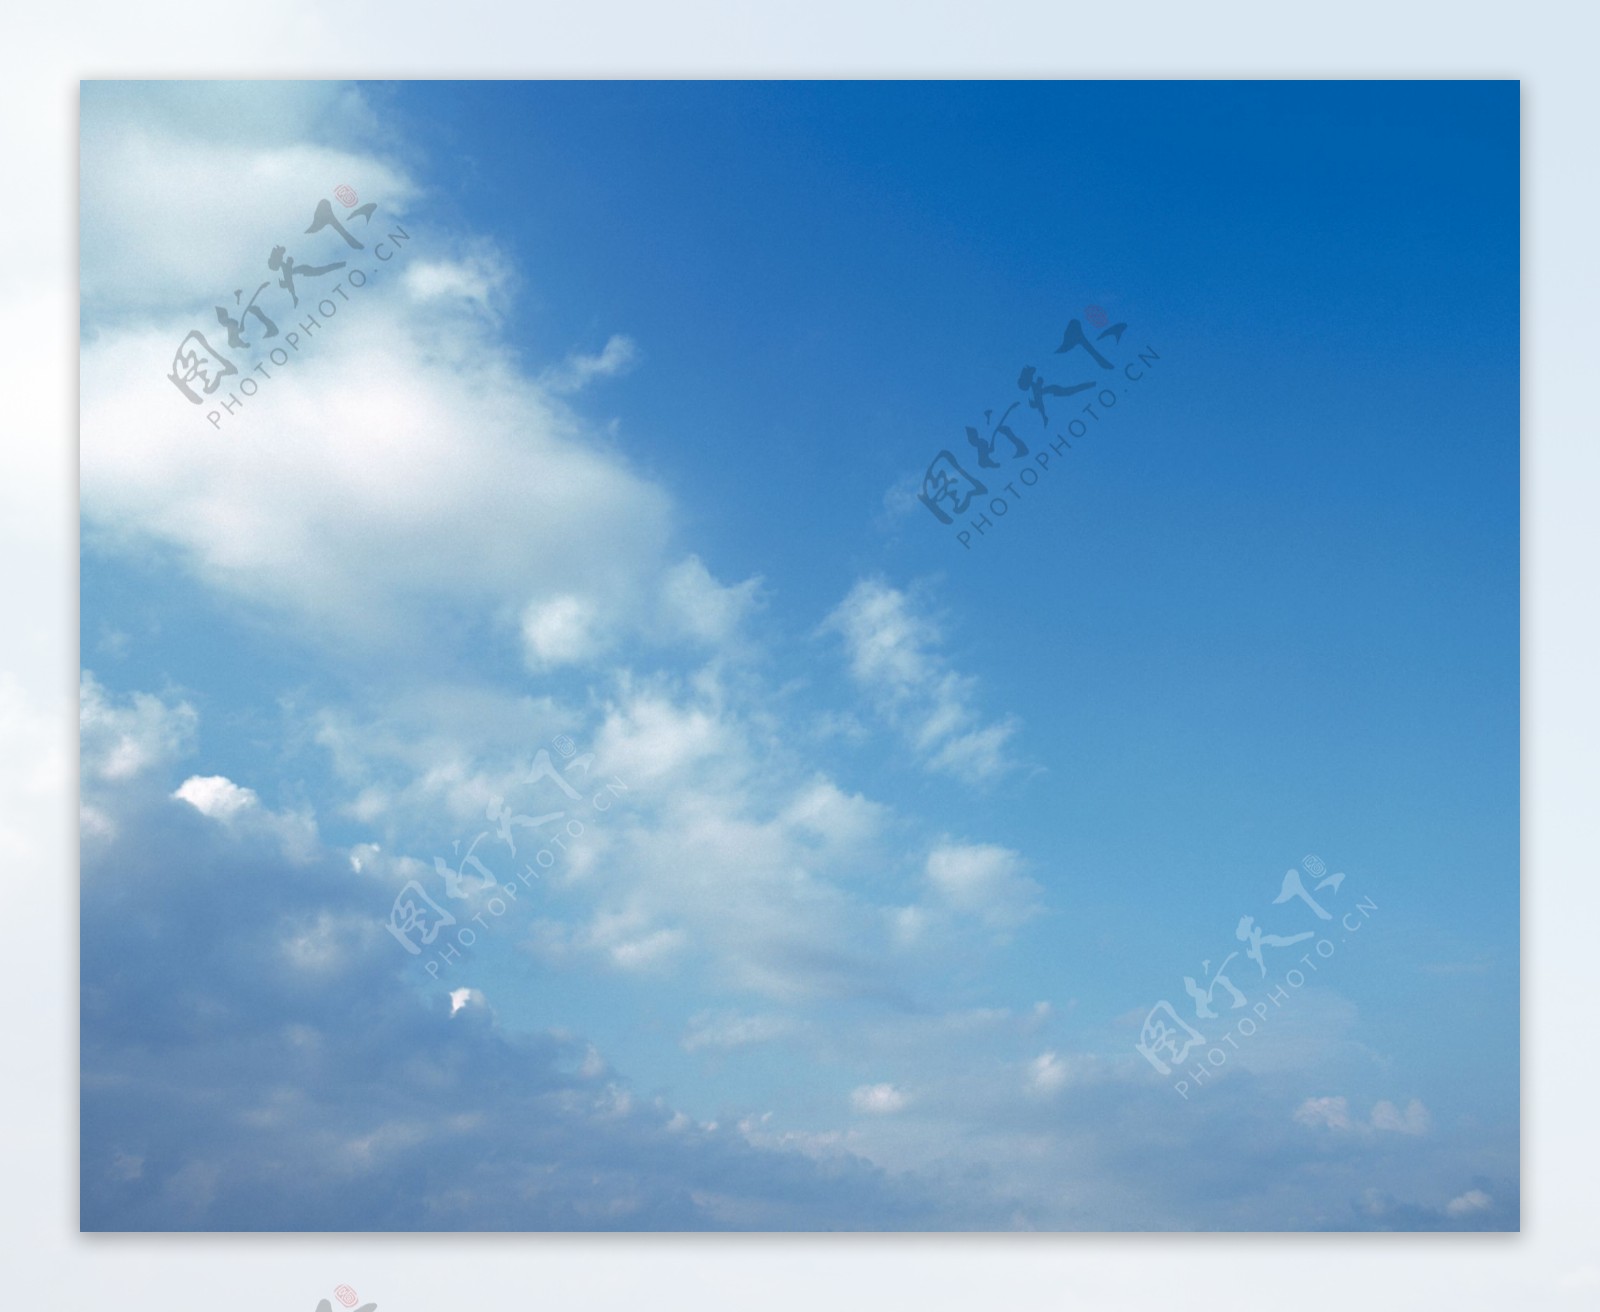 风清云淡摄影自然景观天空云彩蓝天白云天空背景图片